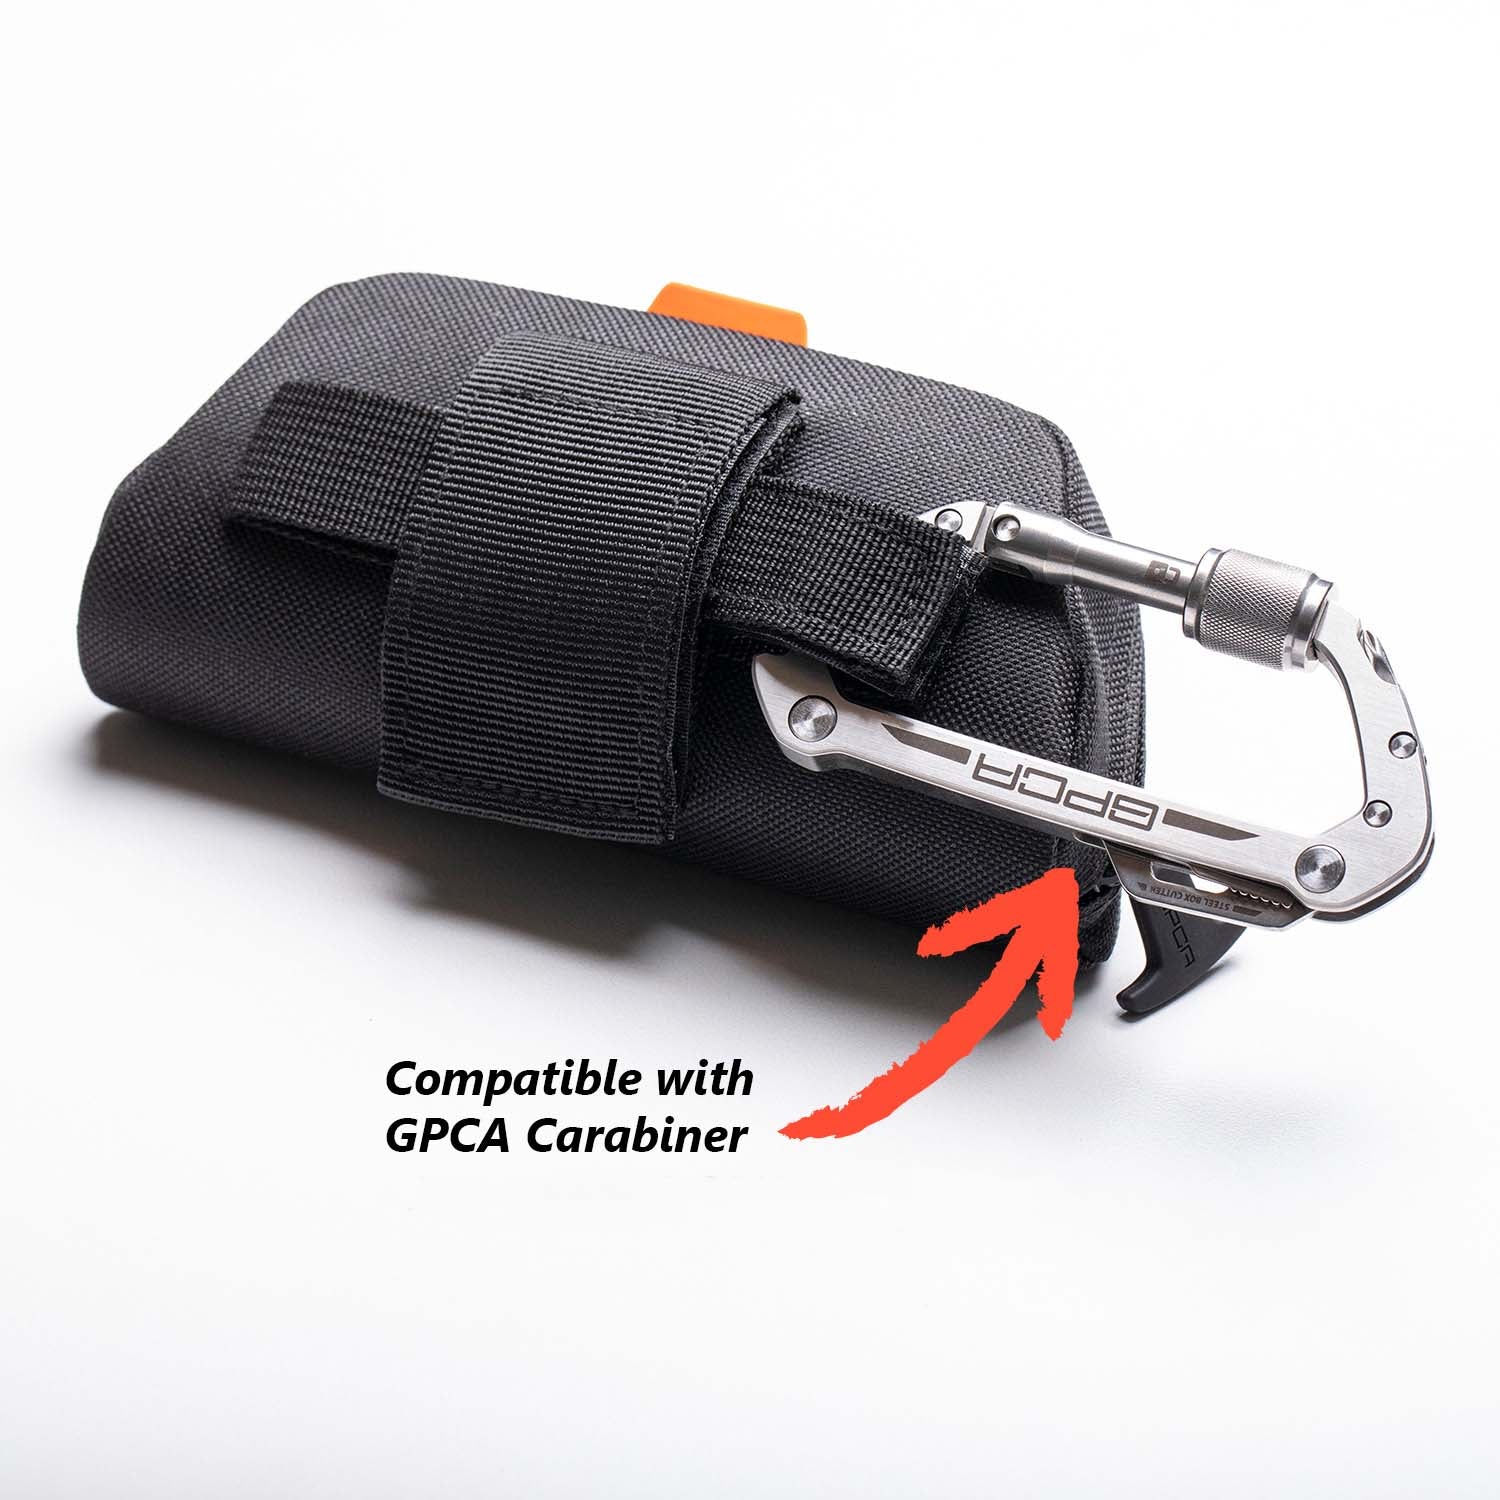 GPCA Carabiner X GOVO Wallet  Multitool, Carabiner, Key carabiner